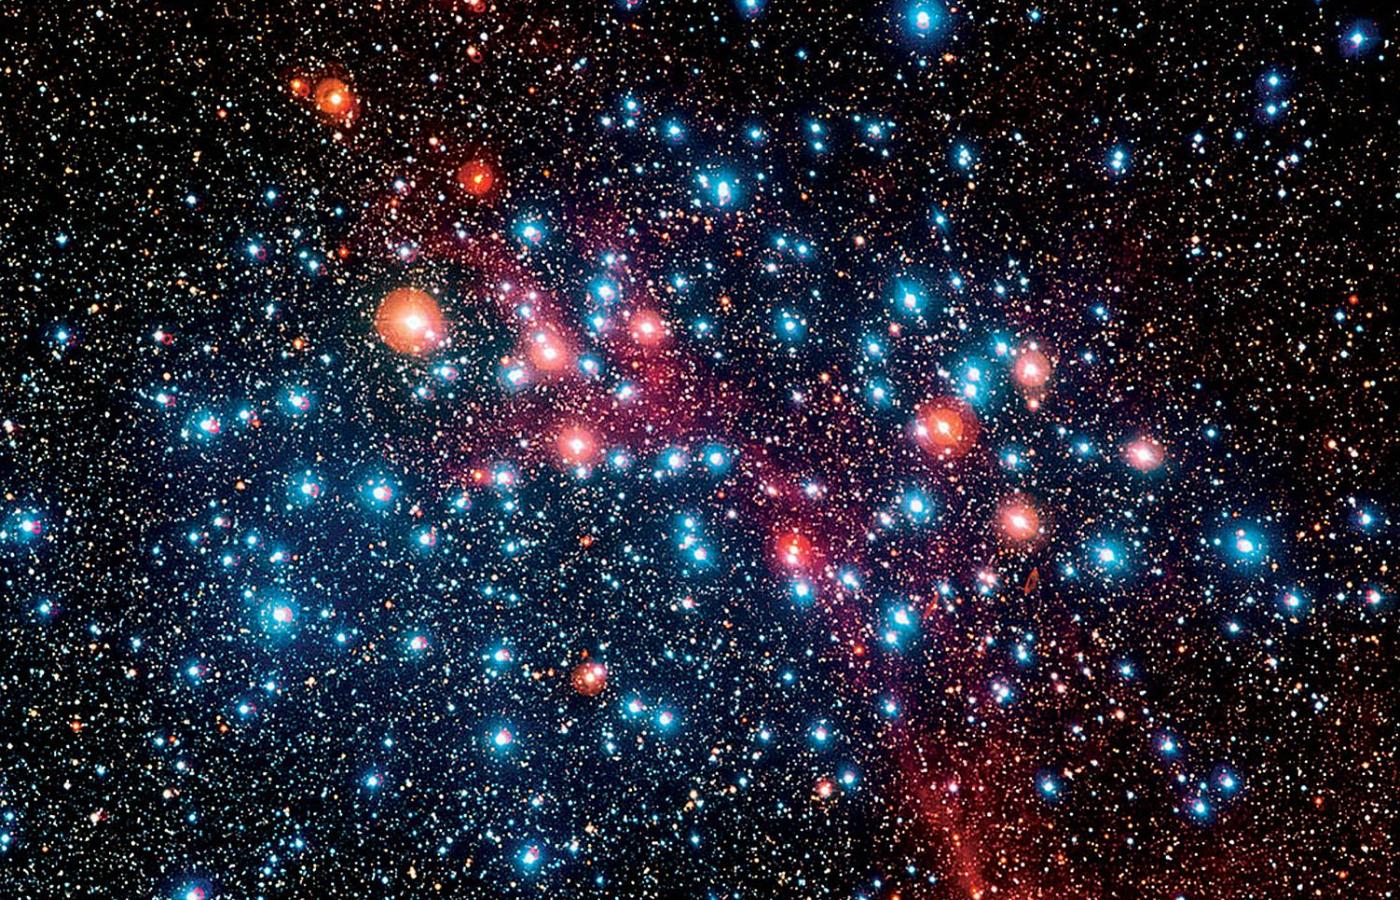 Zdjęcie gromady gwiazd NGC 3532, zwanej też Studnią Życzeń, wykonane przez 2,2-metrowy teleskop ESO MPG pracujący w Obserwatorium La Silla w Chile, na południowym krańcu pustyni Atakama.